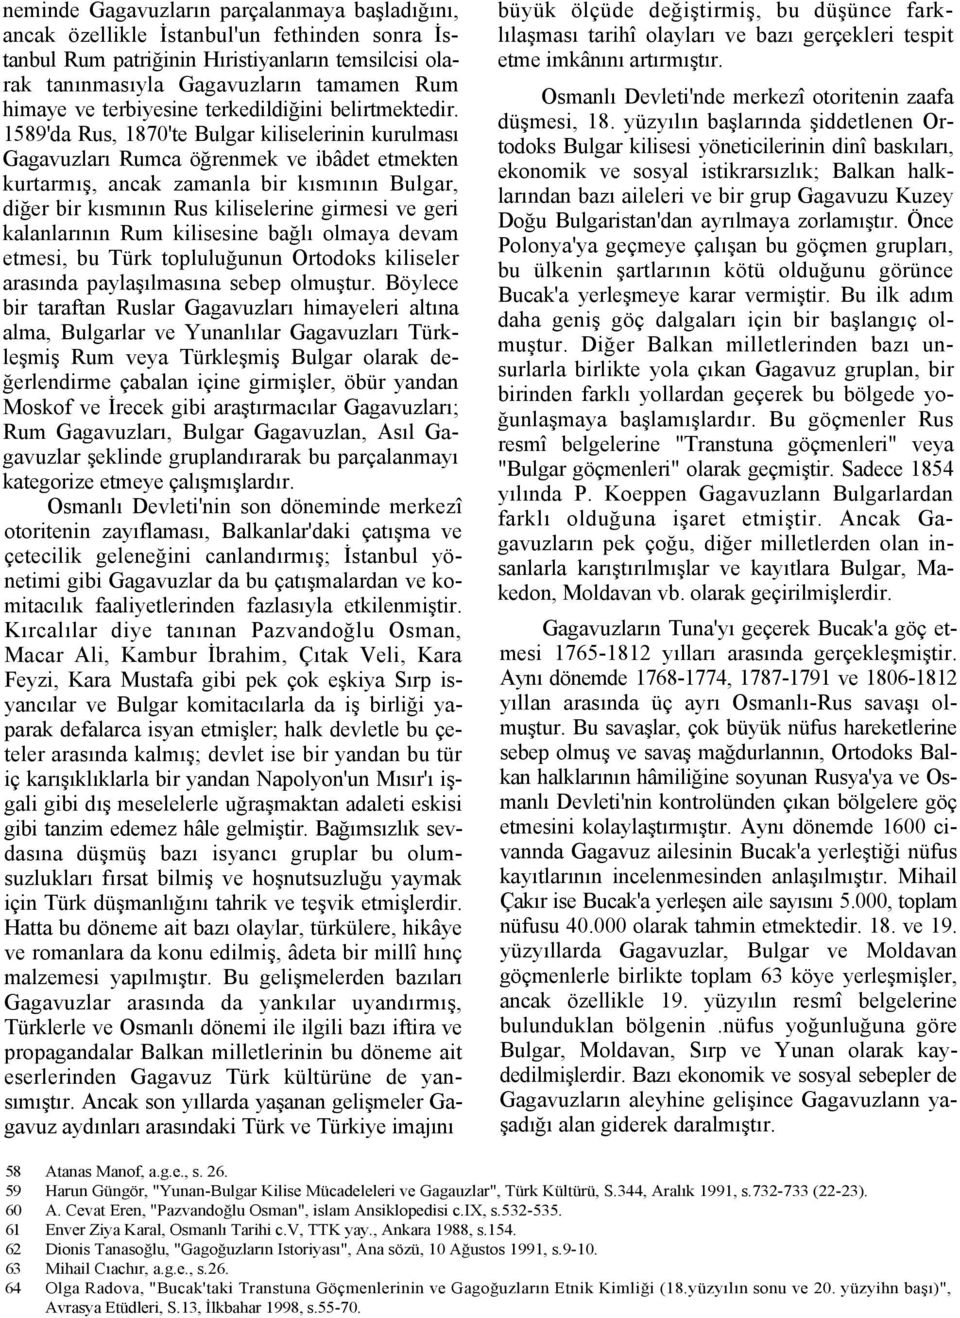 1589'da Rus, 1870'te Bulgar kiliselerinin kurulması Gagavuzları Rumca öğrenmek ve ibâdet etmekten kurtarmış, ancak zamanla bir kısmının Bulgar, diğer bir kısmının Rus kiliselerine girmesi ve geri